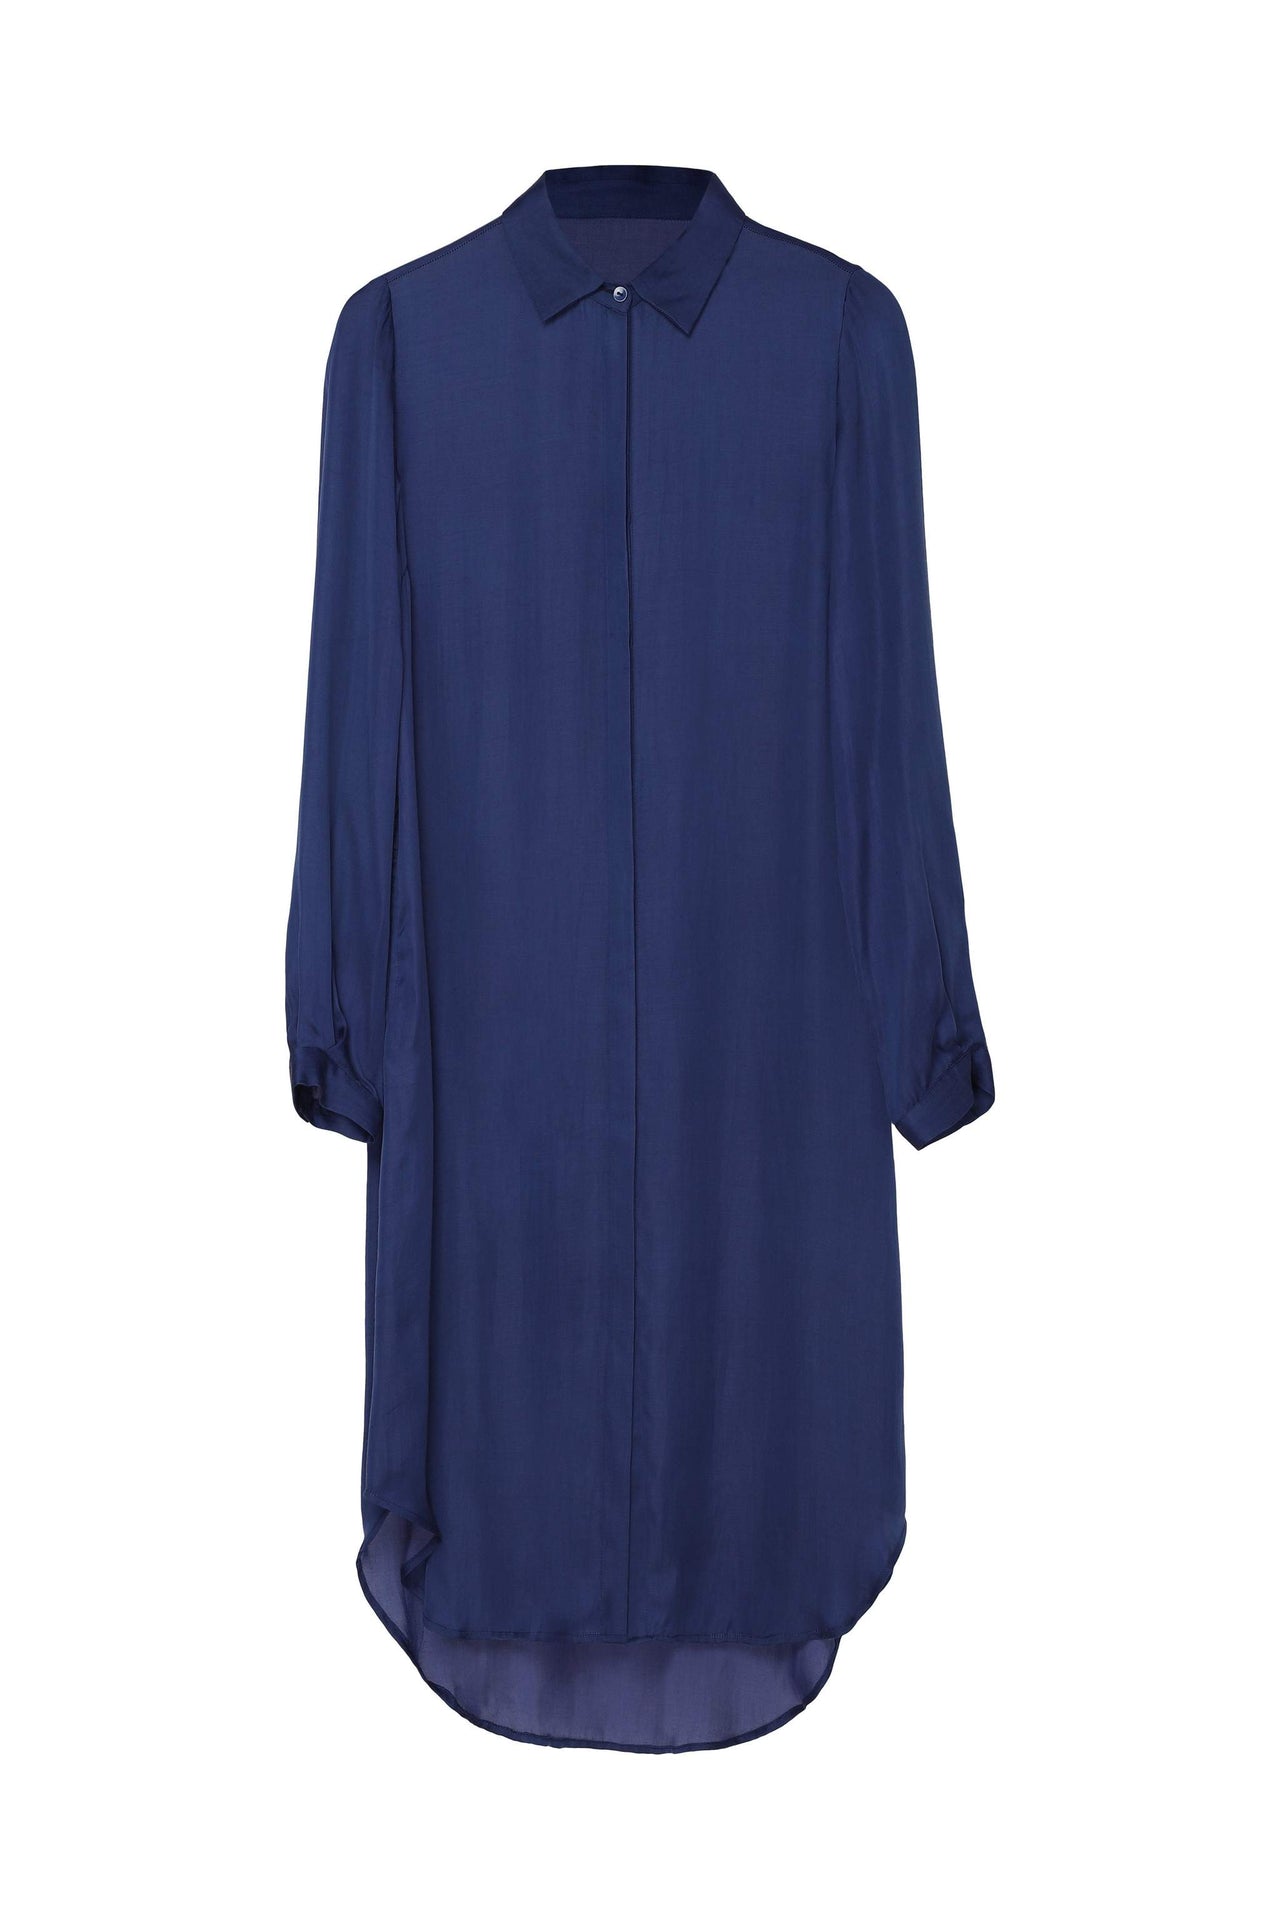 NEU NOMADS ESSENTIAL SHIRT DRESS- LAPIS BLUE